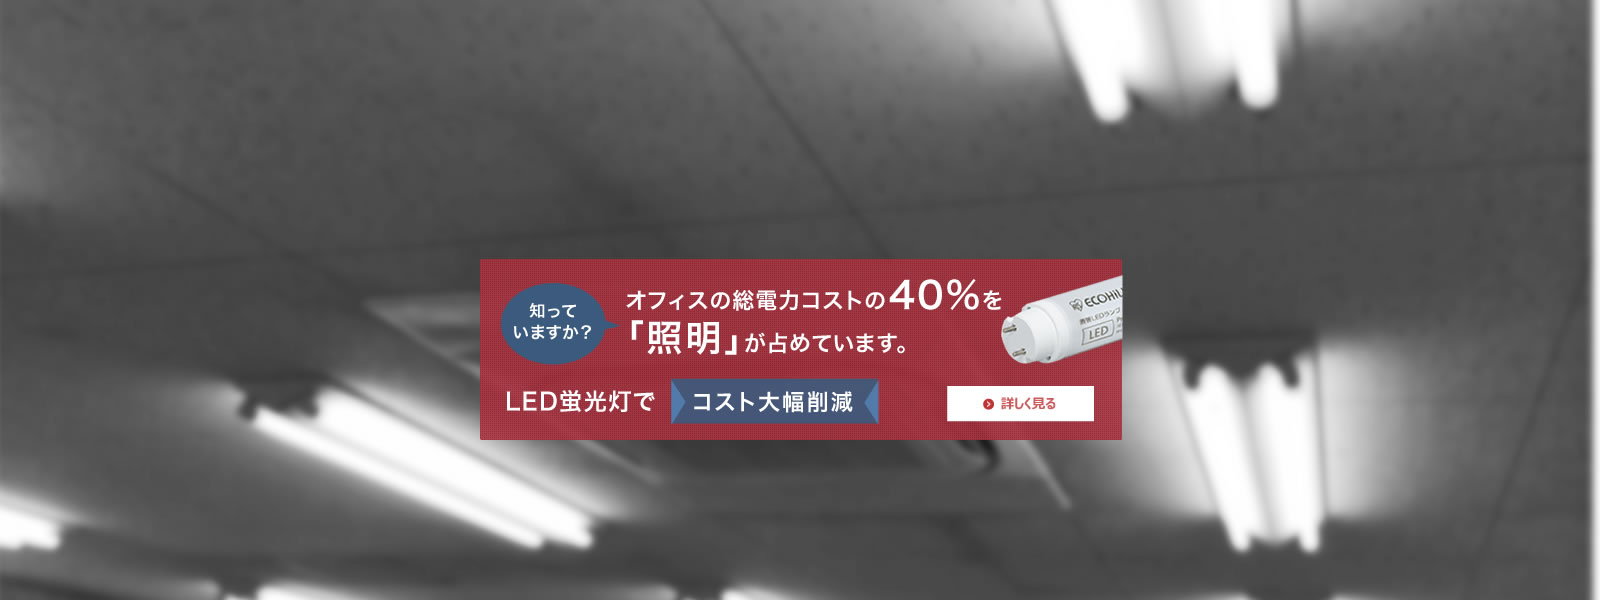 オフィスの総電力コストの40%を「照明」が占めています。LED蛍光灯でコスト大幅削減